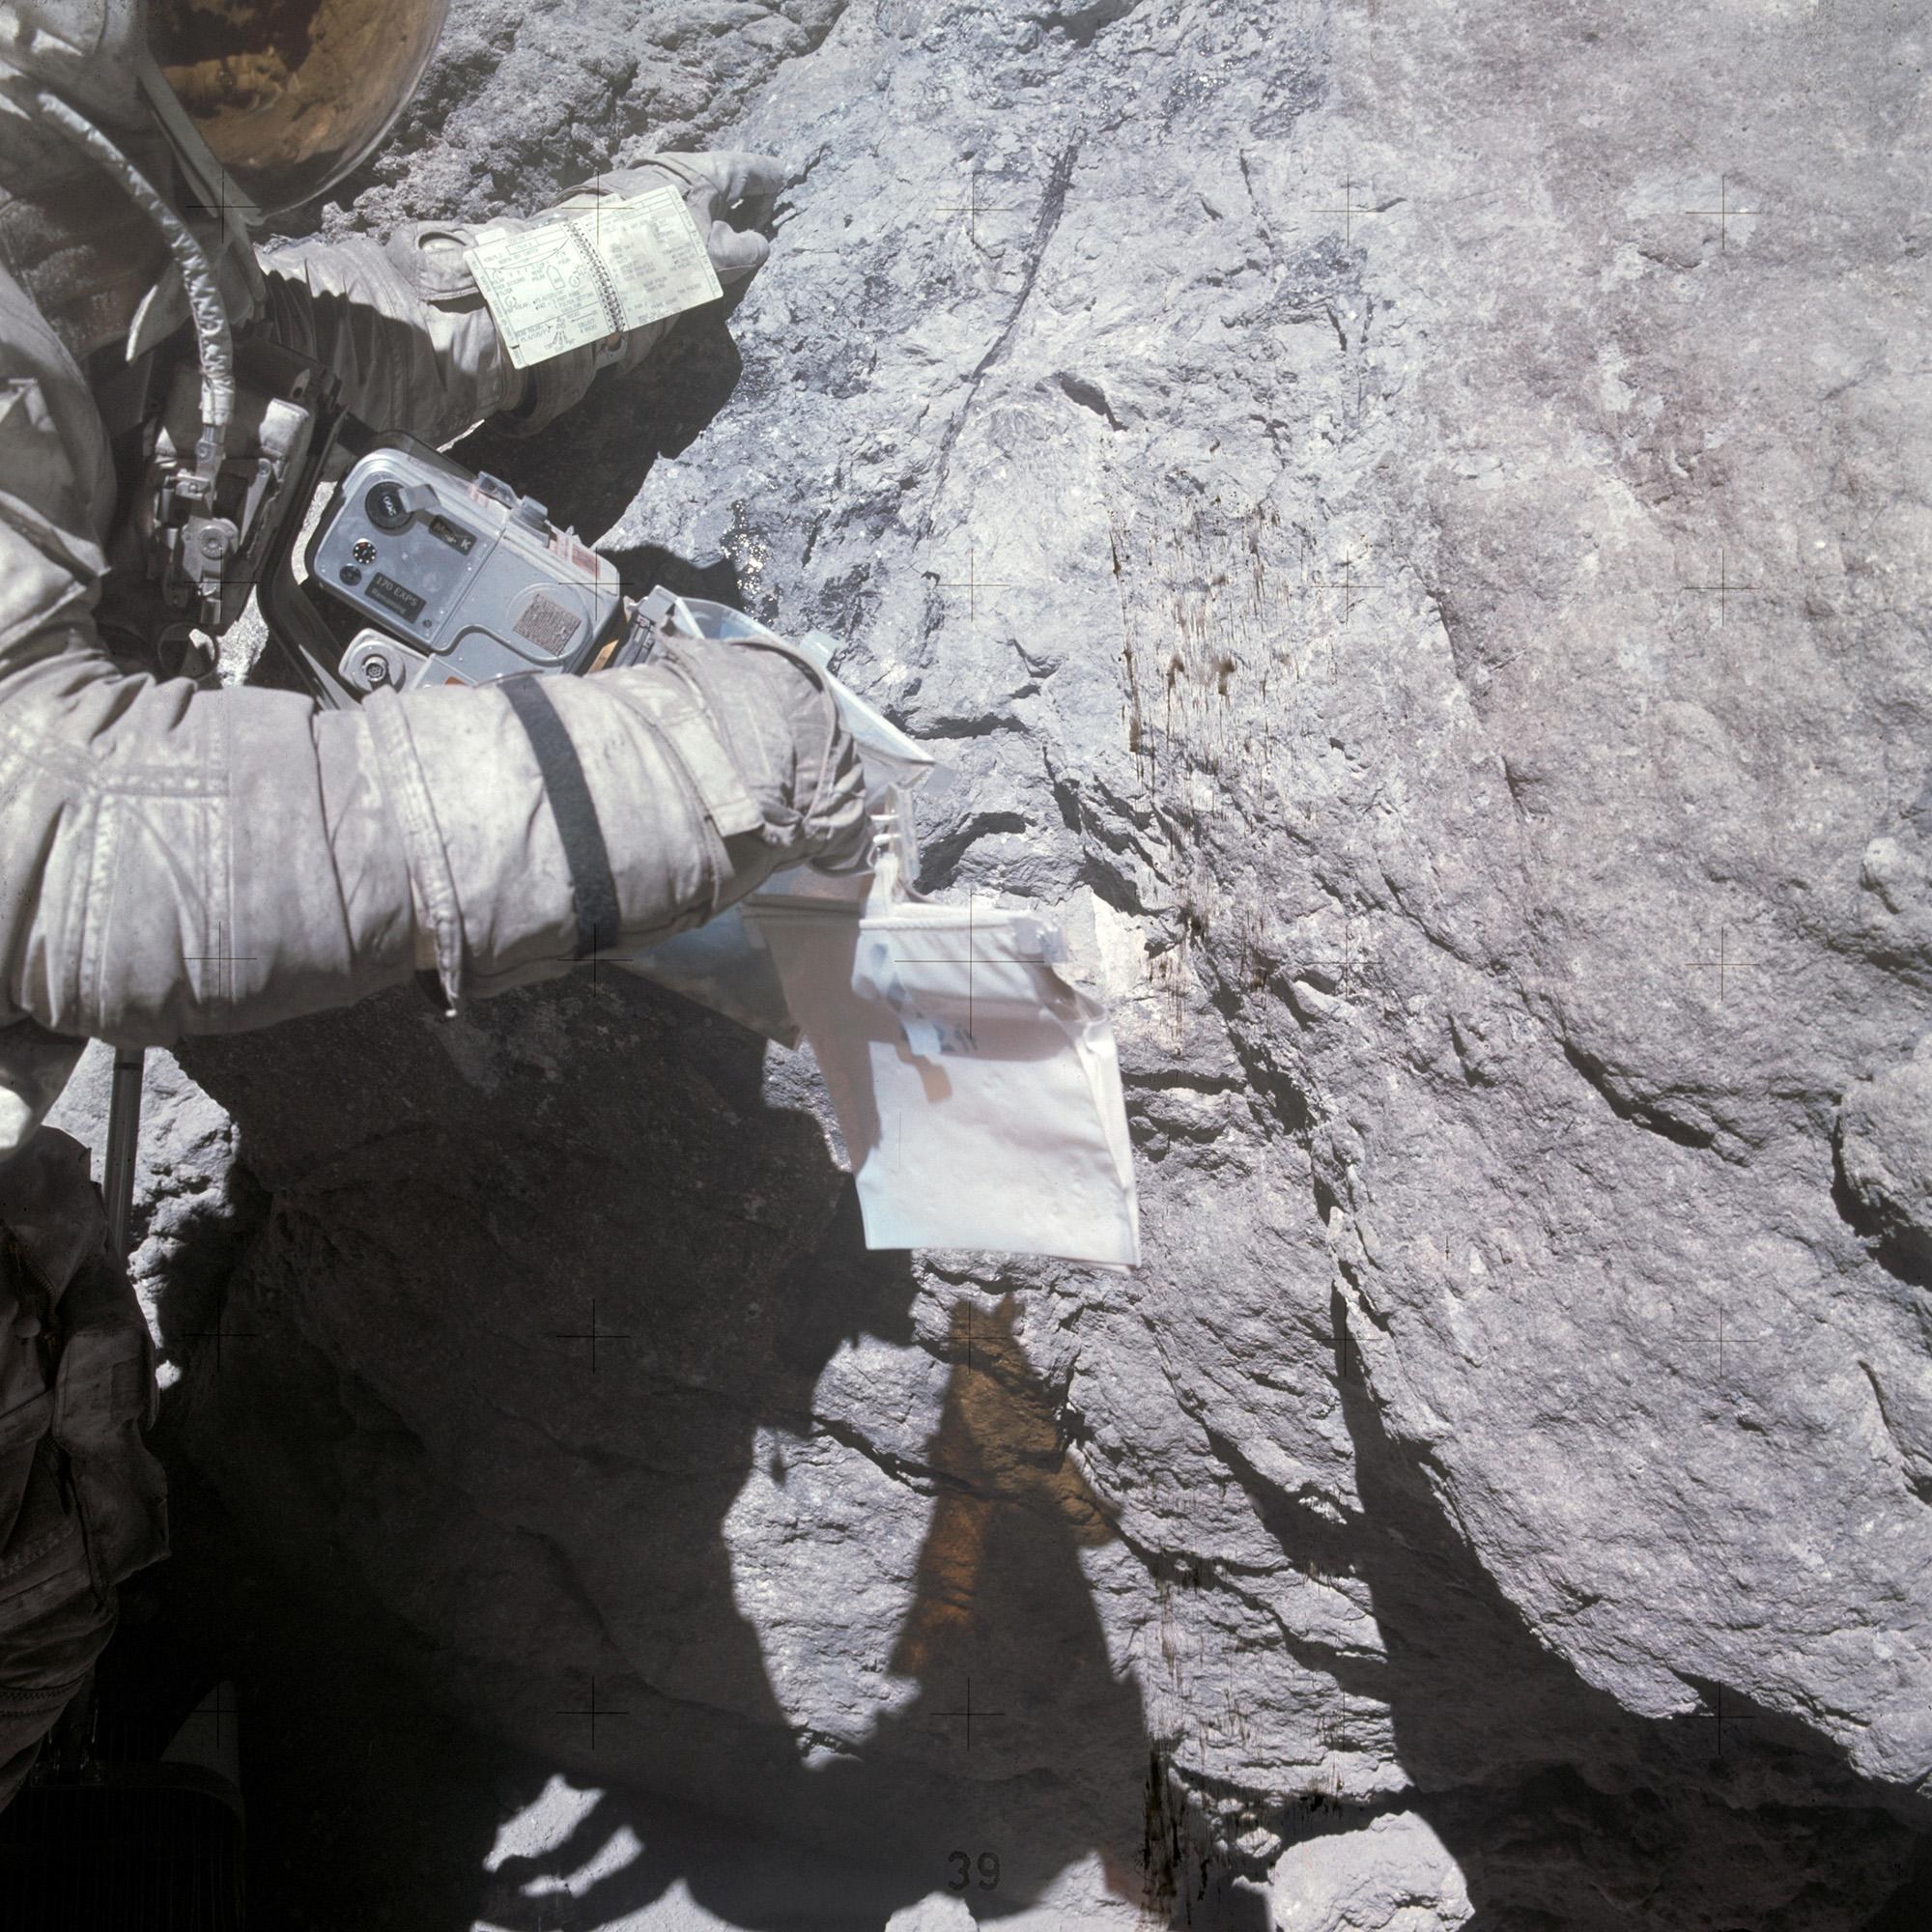 Charles Duke deutet am Houston Rock auf einen Feldspatkristall, am linken Arm das Exkursionshandbuch